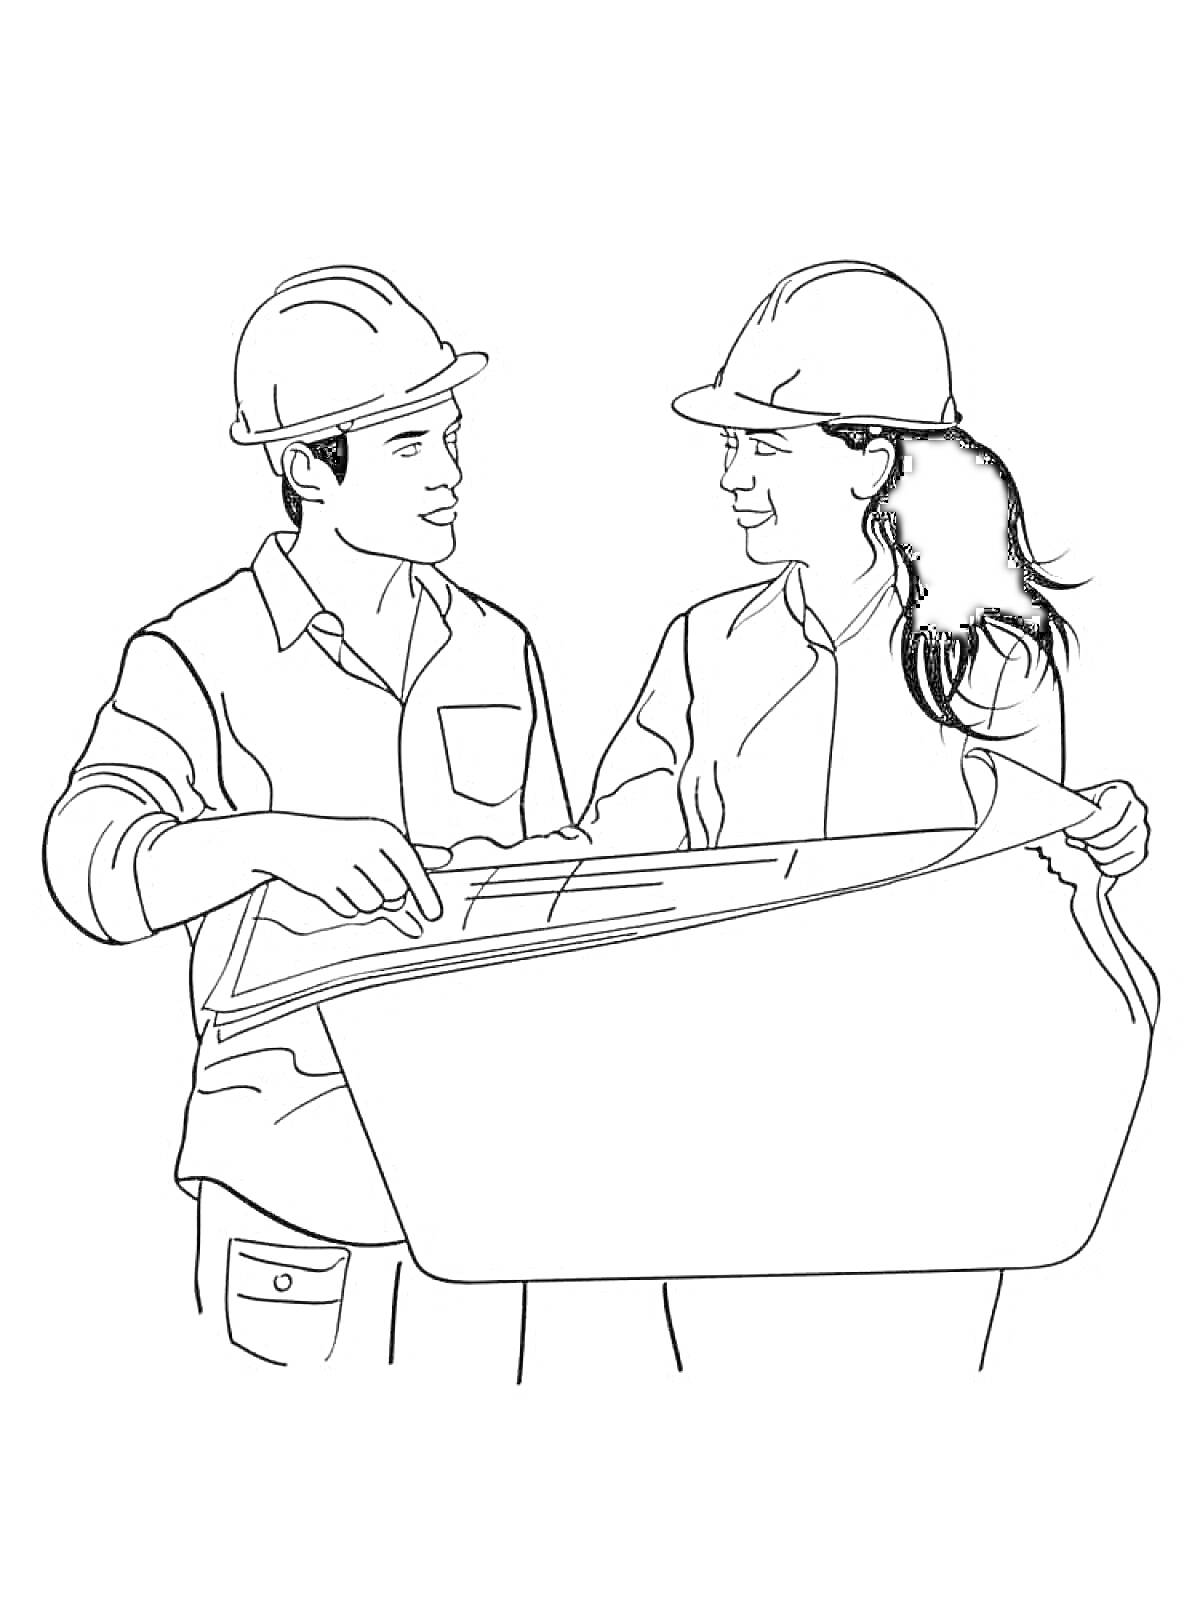 Раскраска Два инженера в касках рассматривают строительные планы